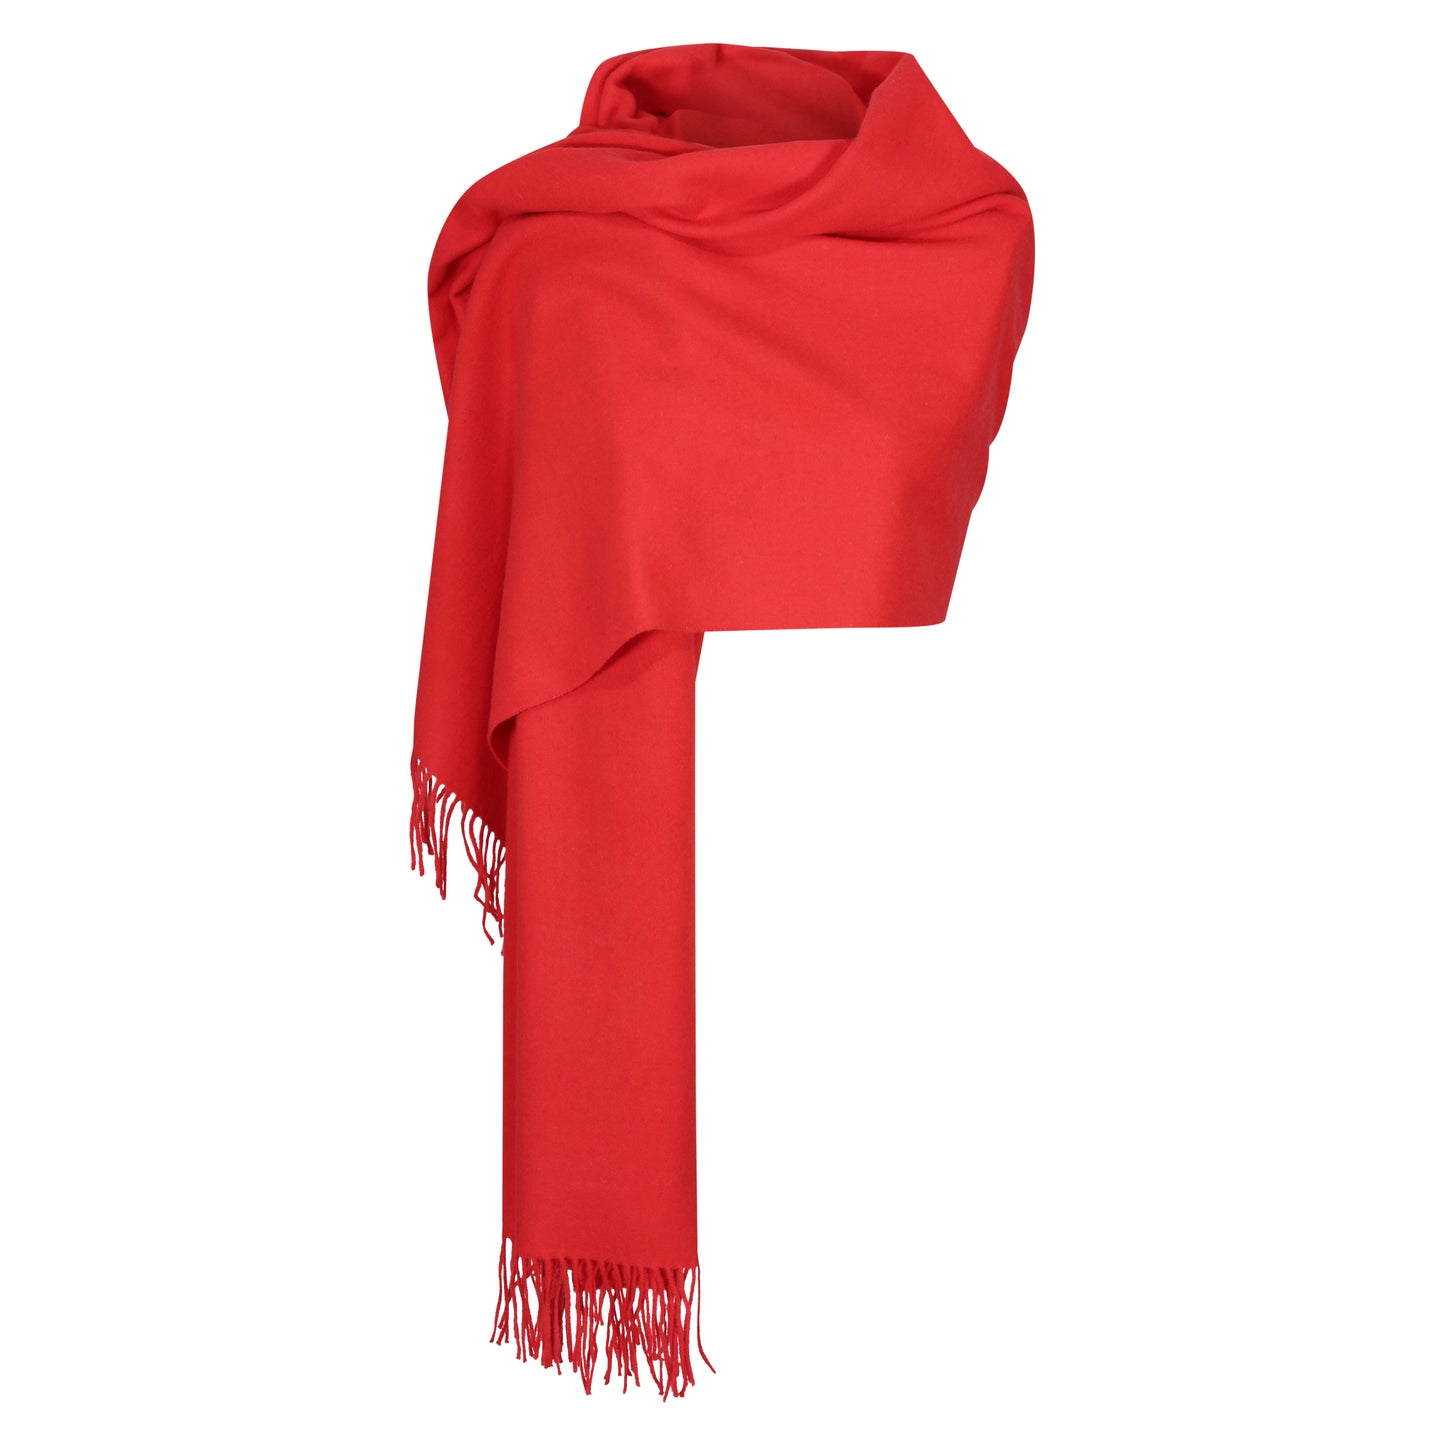 Venetian Scarlet 100% Lambswool Large Blanket Scarf